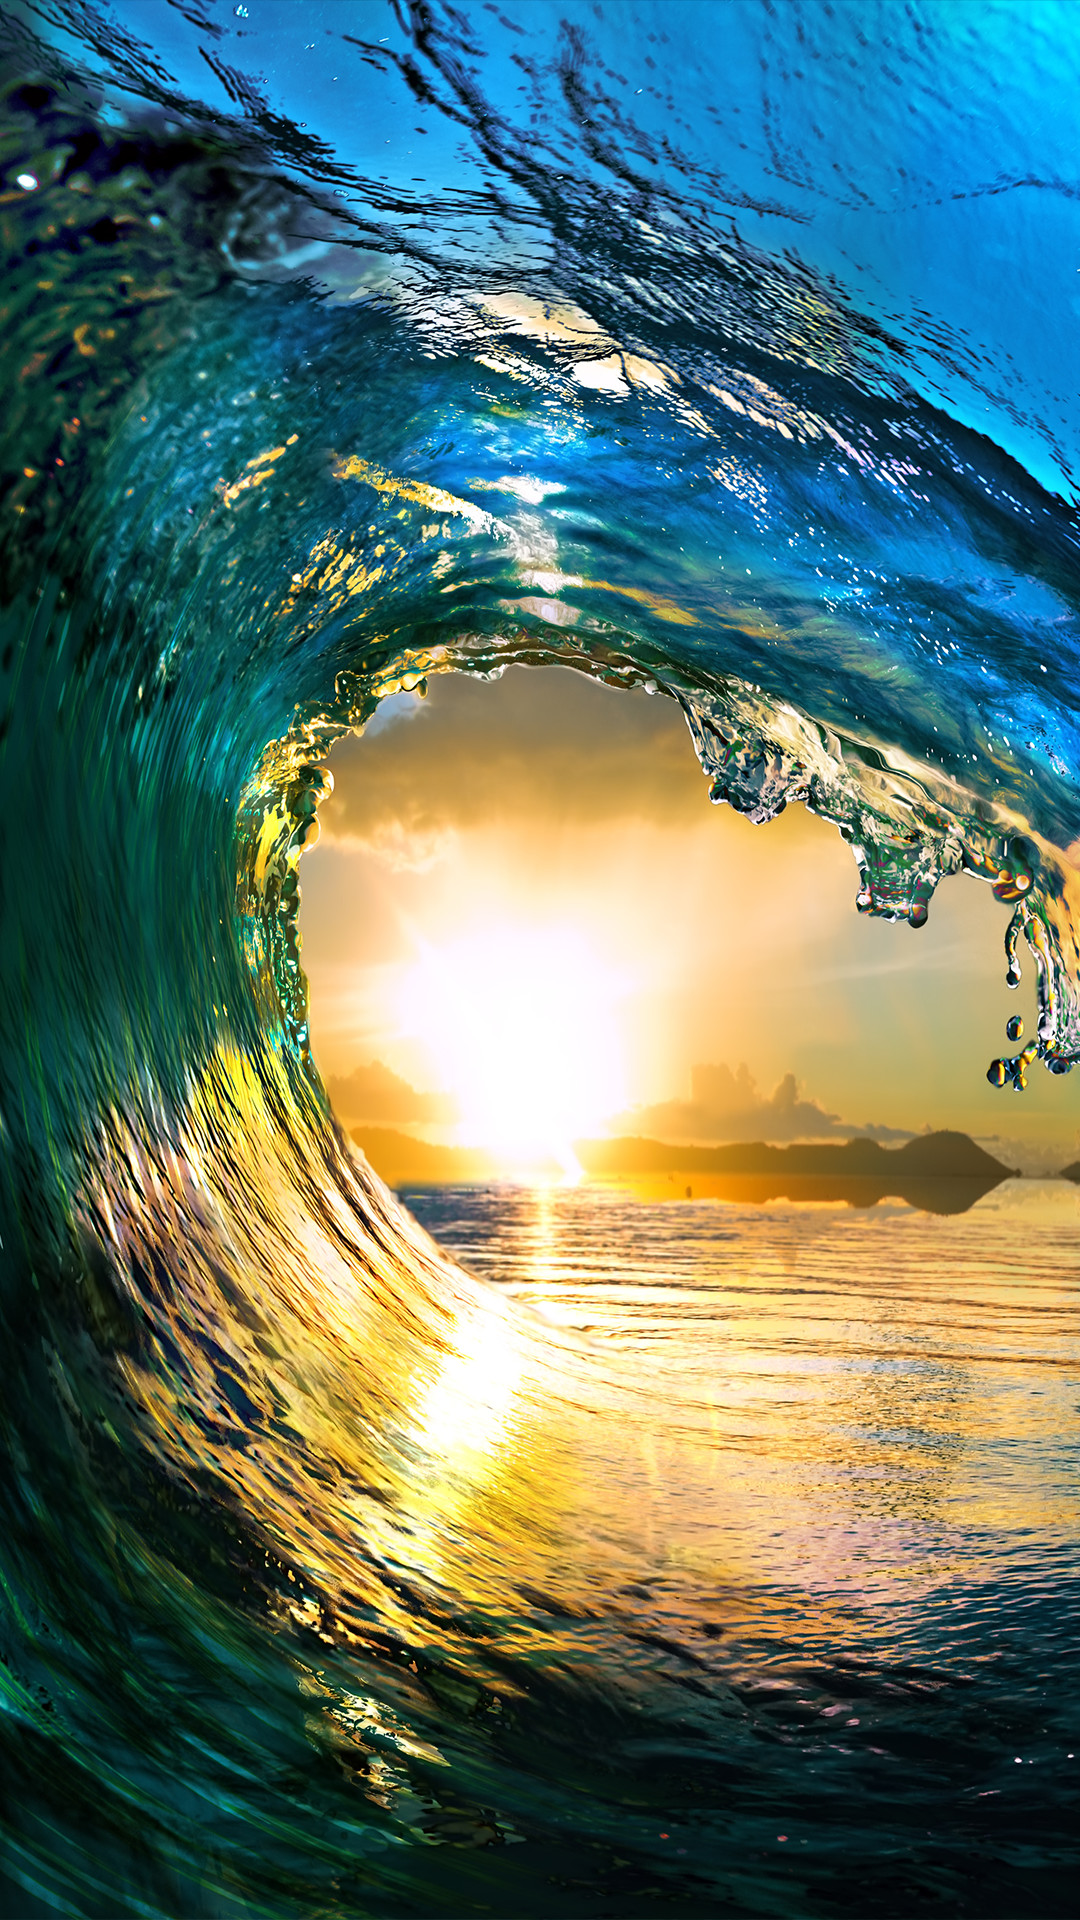 1080x1920 ââTAP AND GET THE FREE APP! Art Creative Water Sea Waves Sun Sky